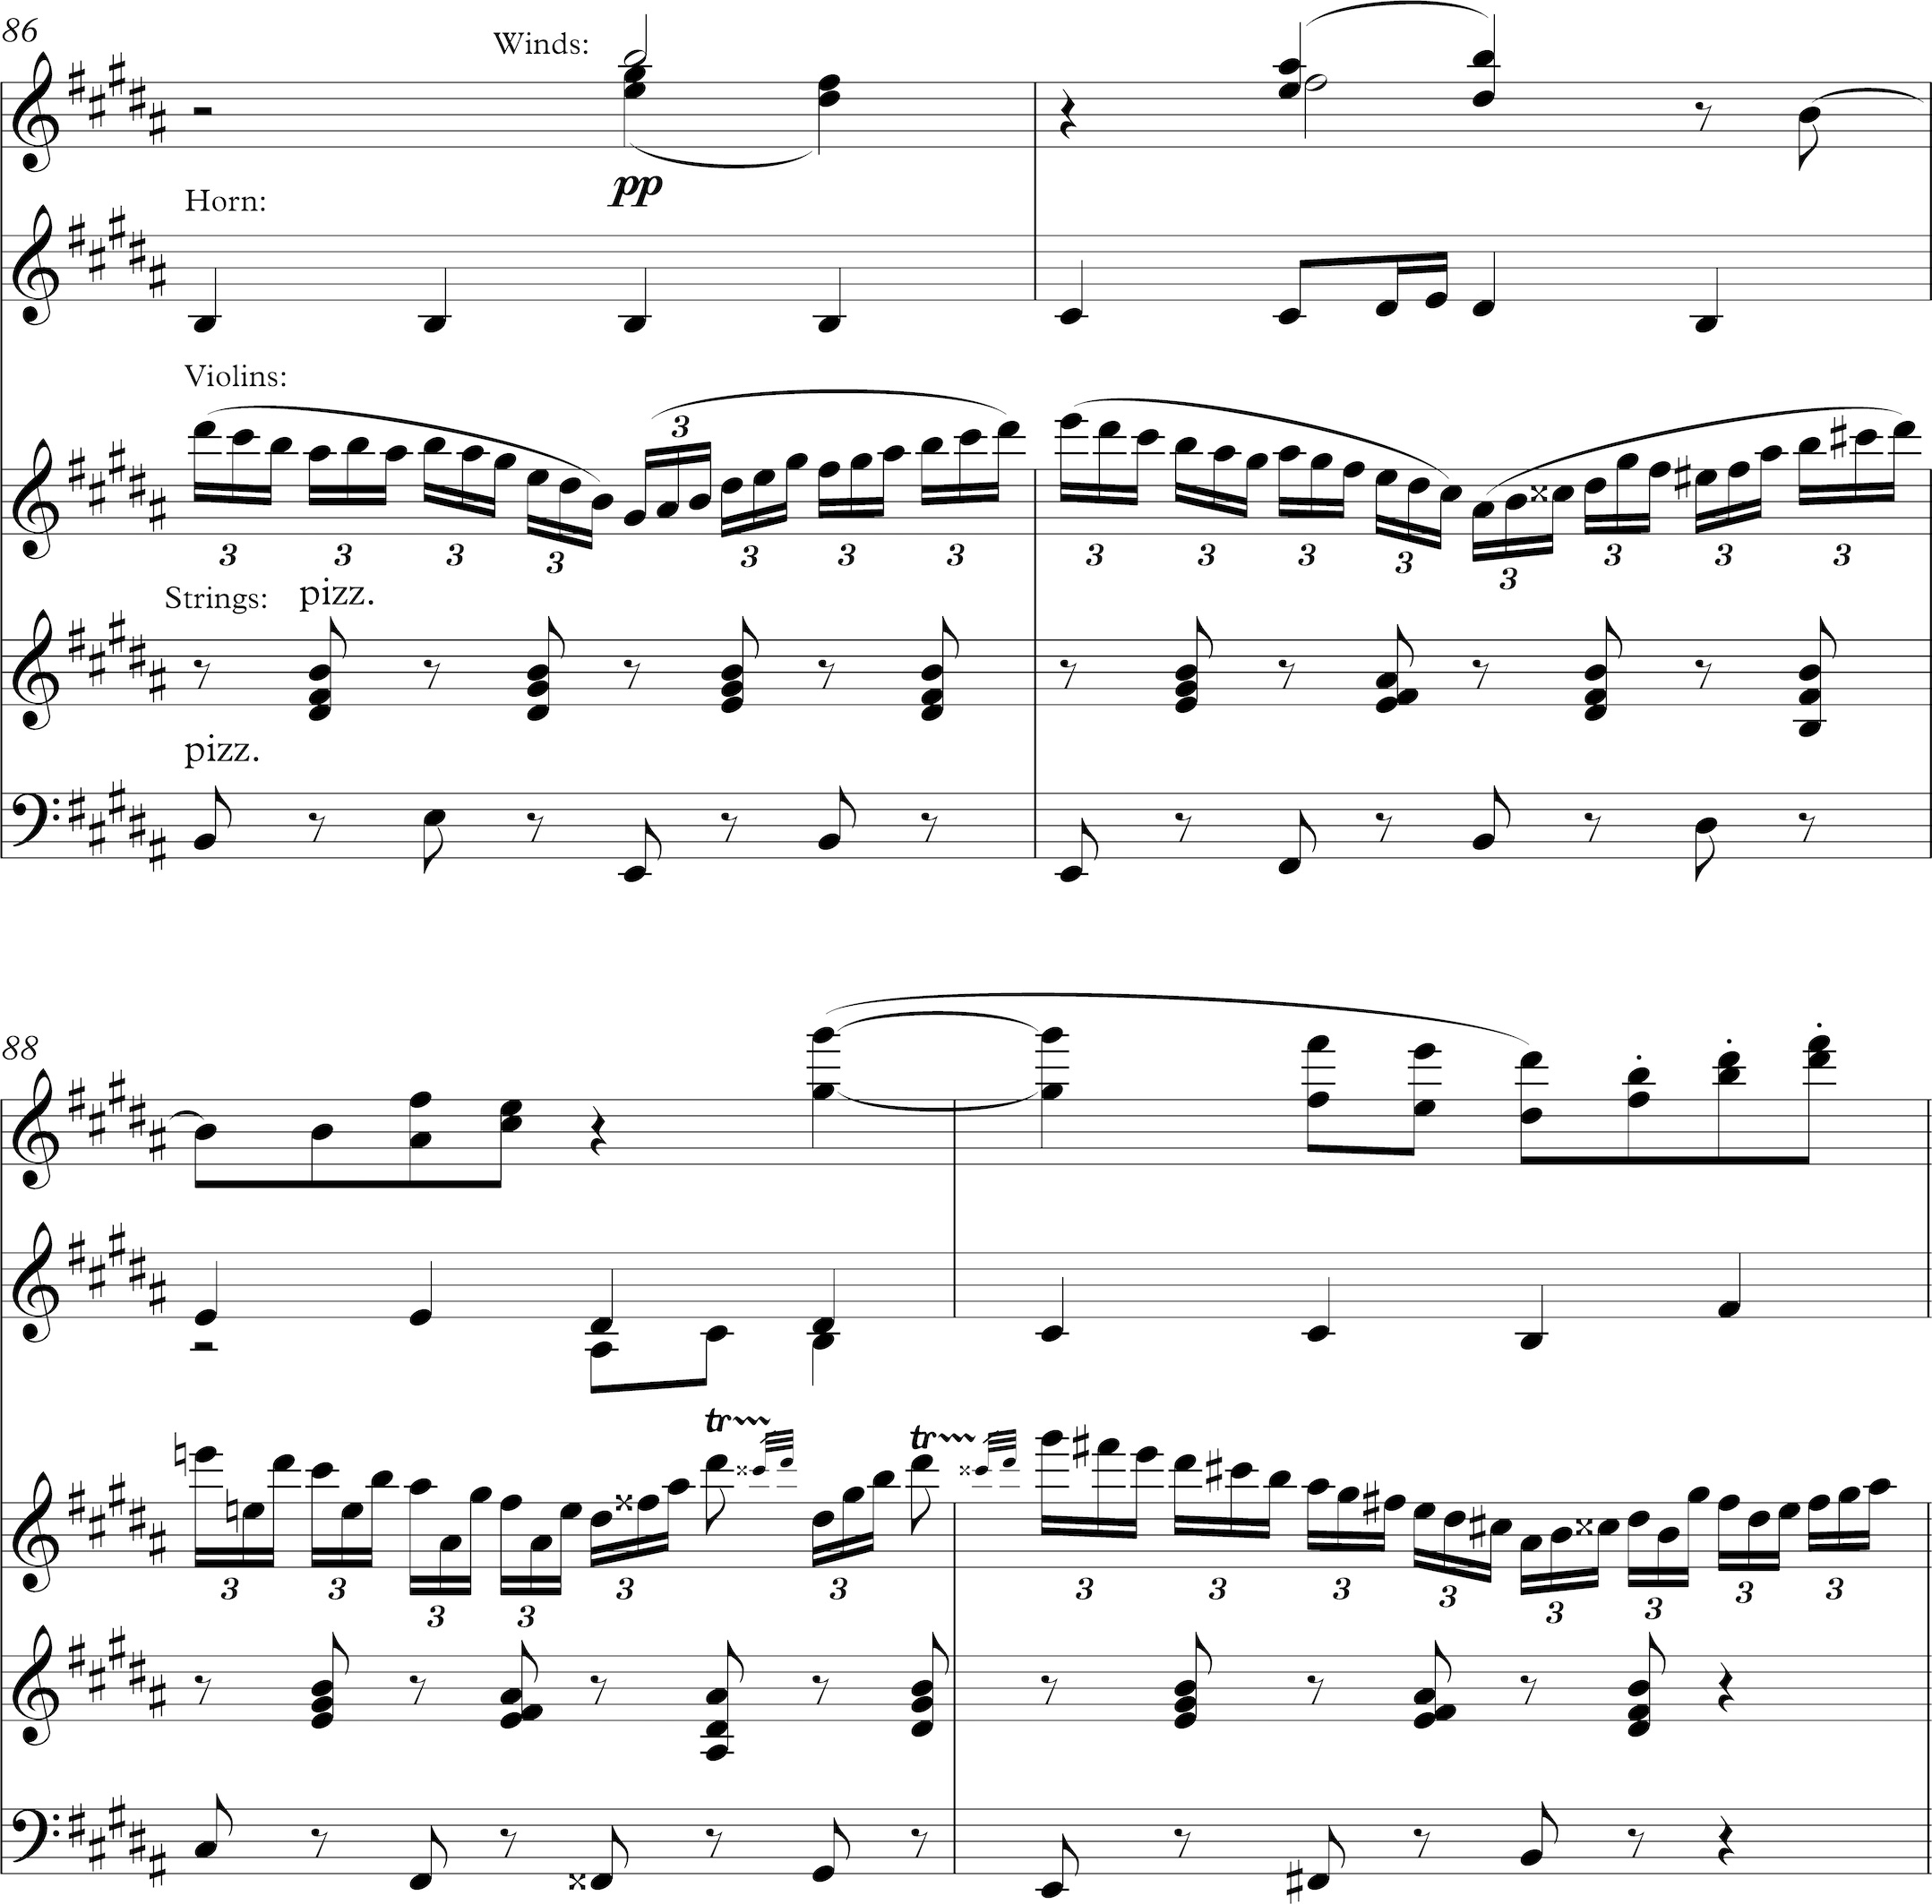 https://www.kylegann.com/Bristow4ii-Chorale-variation.jpg